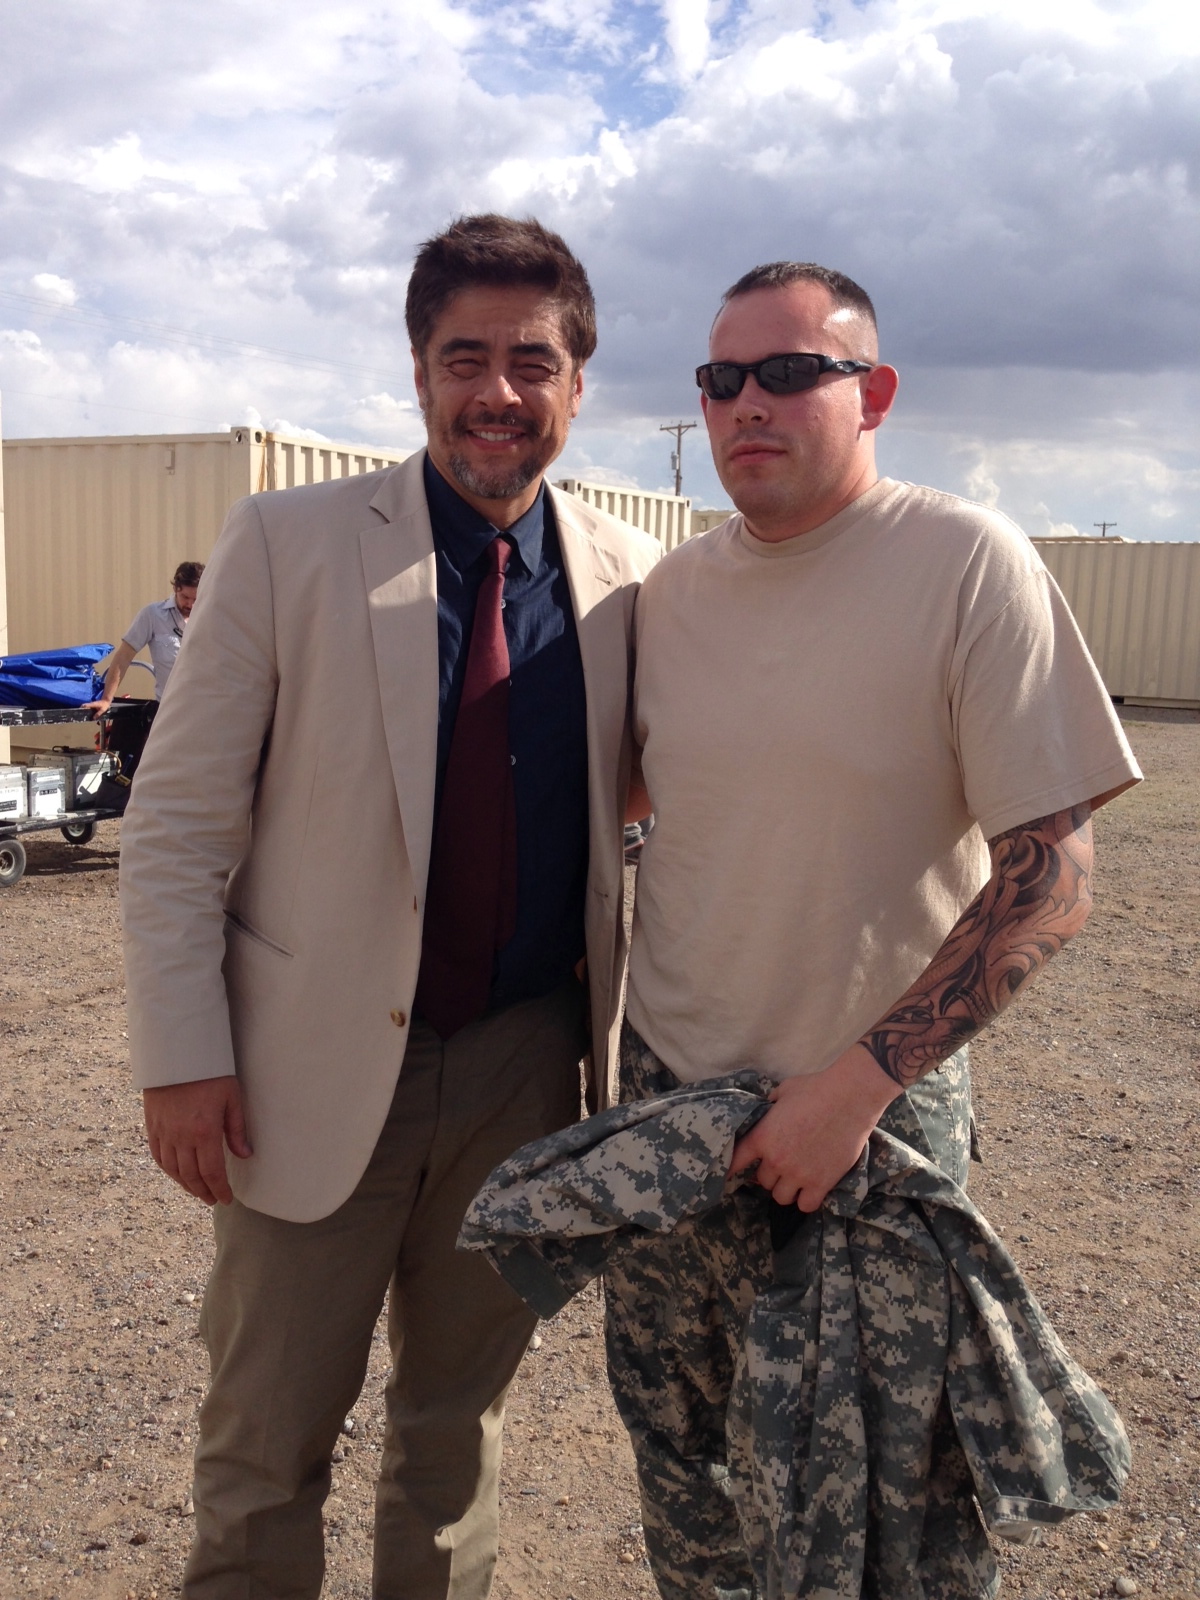 Benicio Del Toro and I on set of Sicario